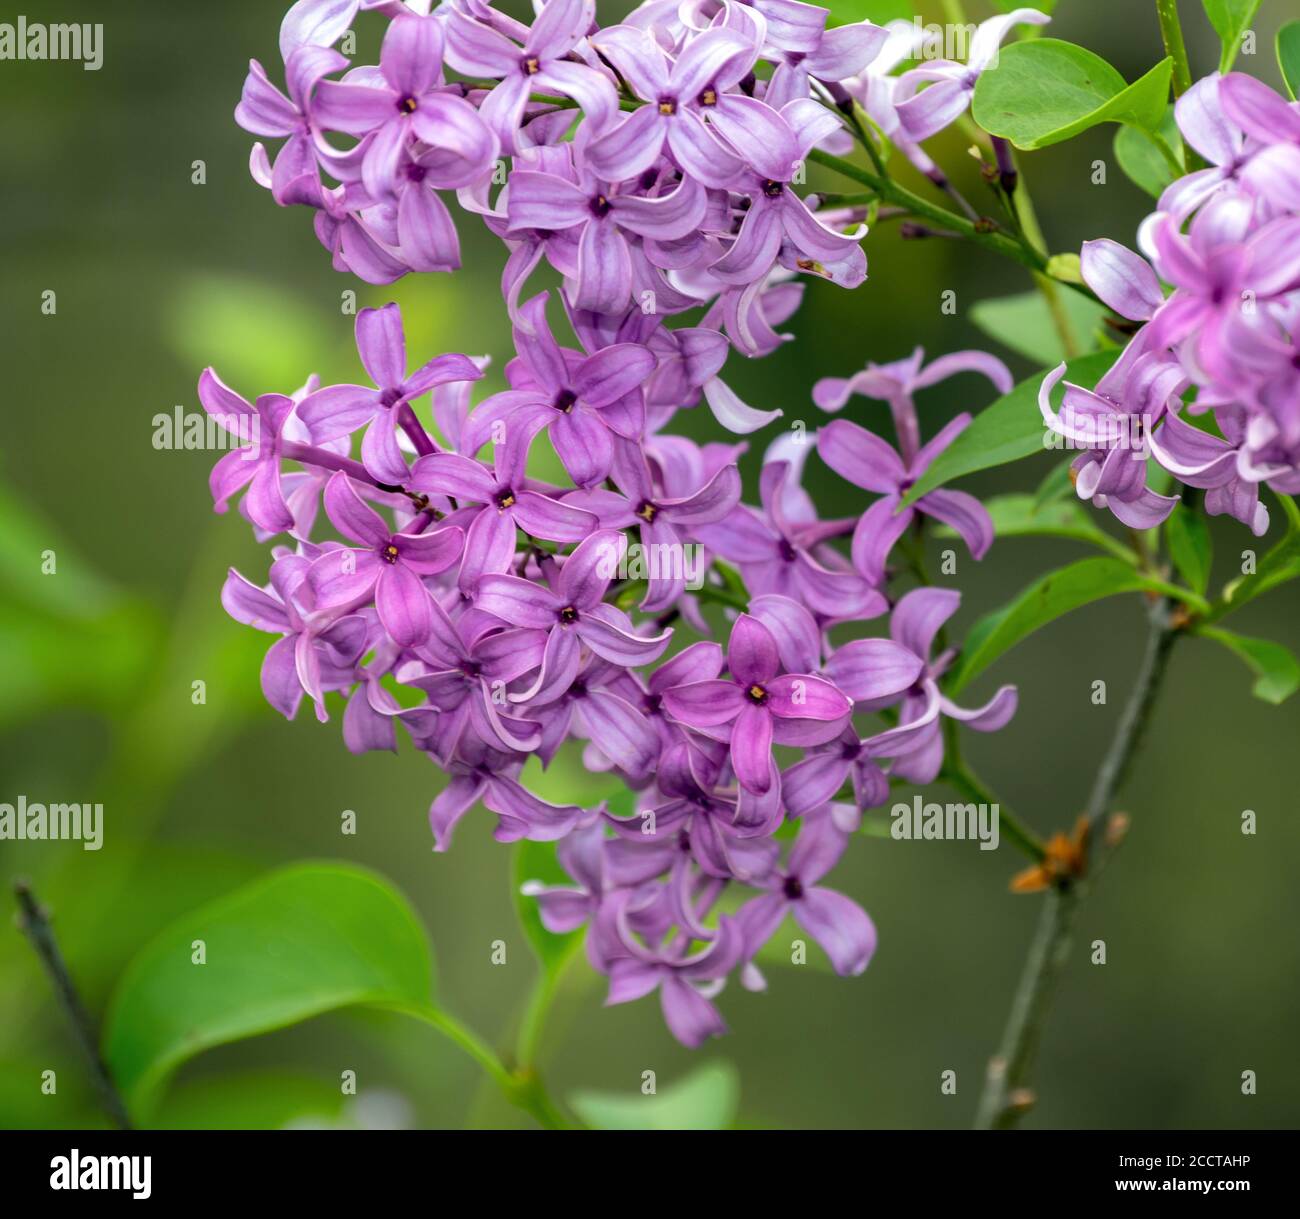 Zarte Blütenblätter eines gemeinen Fliederbusches sind weich und ziehen das Auge vor einem unfokussierten Hintergrund an, der den Frühling in Missouri begrüßt. Stockfoto